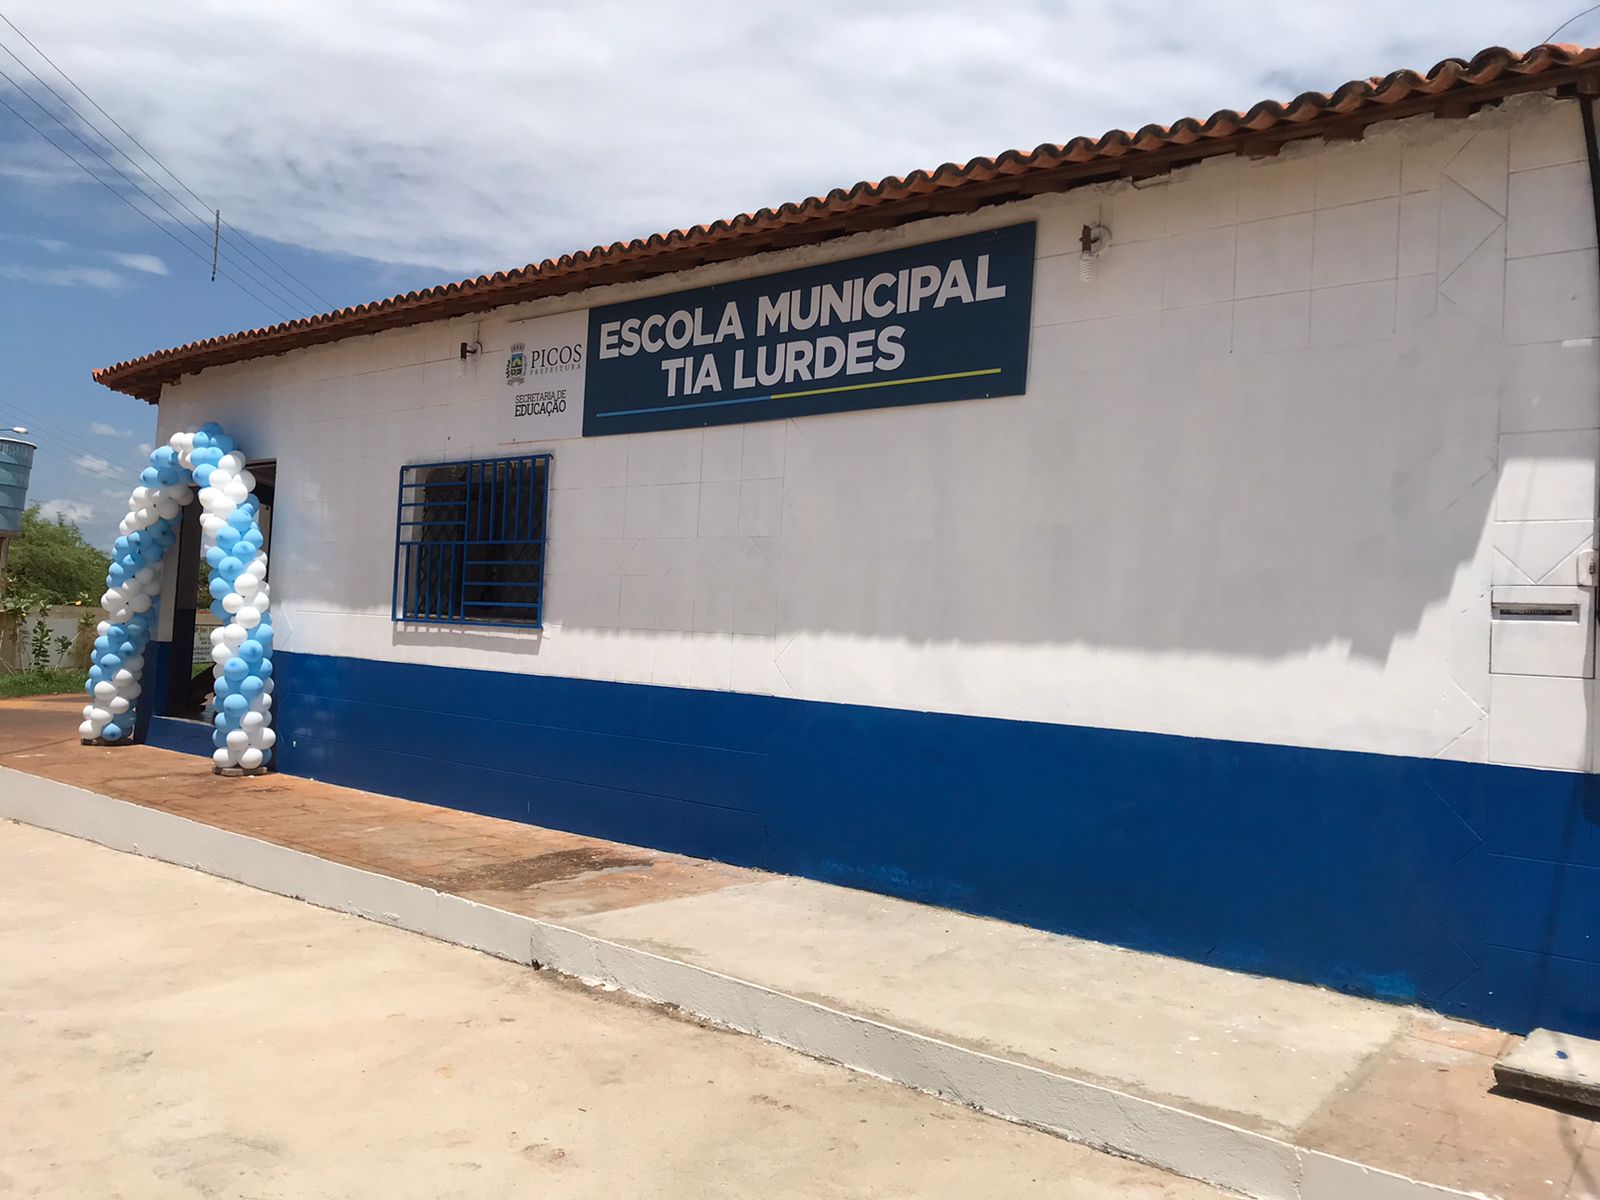 Após reforma e ampliação, Escola Municipal Tia Lurdes é entregue à comunidade do Belo Norte em Picos